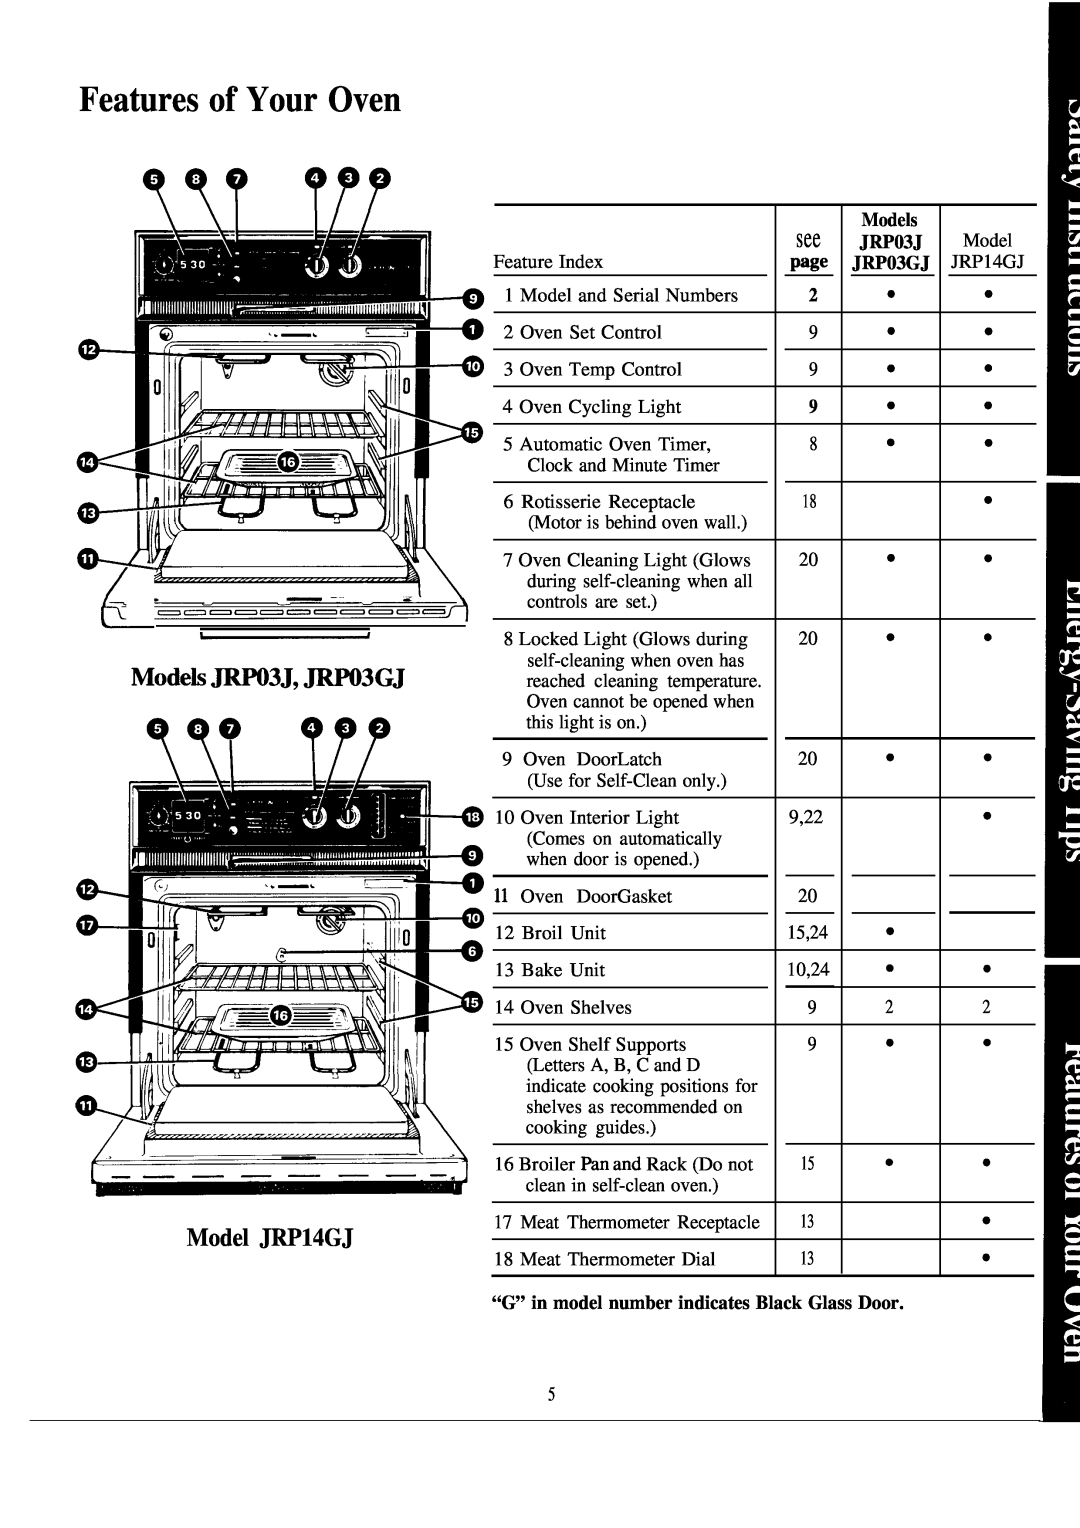 GE JKP16GJ, JKP07J Features of Your Oven, Model JRP14GJ, Models, JRP03J, “G” in model number indicates Black Glass Door 